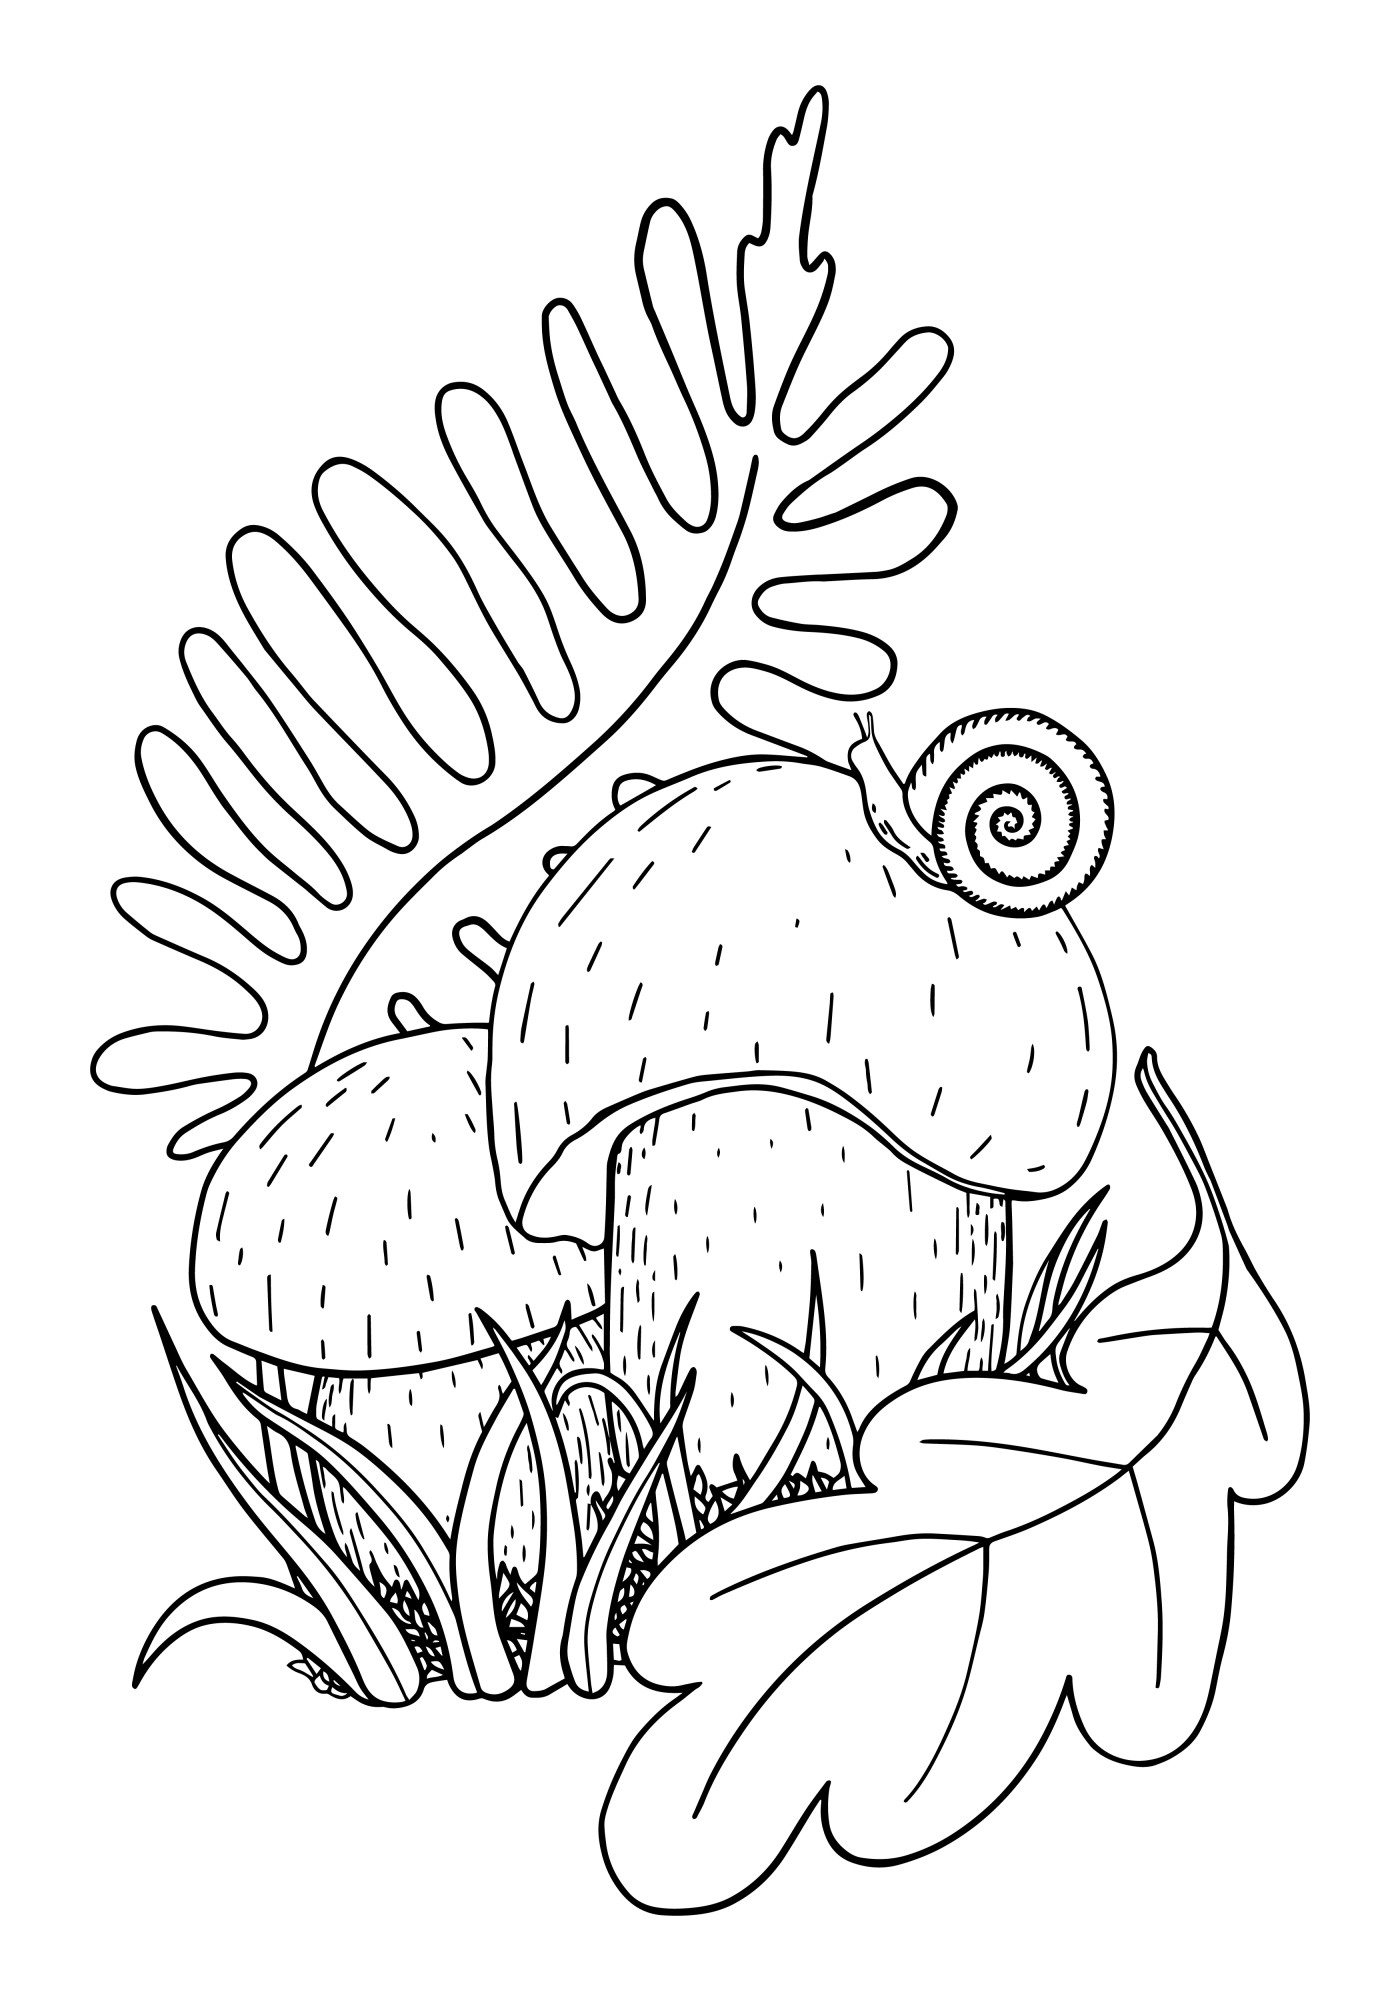 Раскраска для детей: съедобный гриб боровик с улиткой и листиками